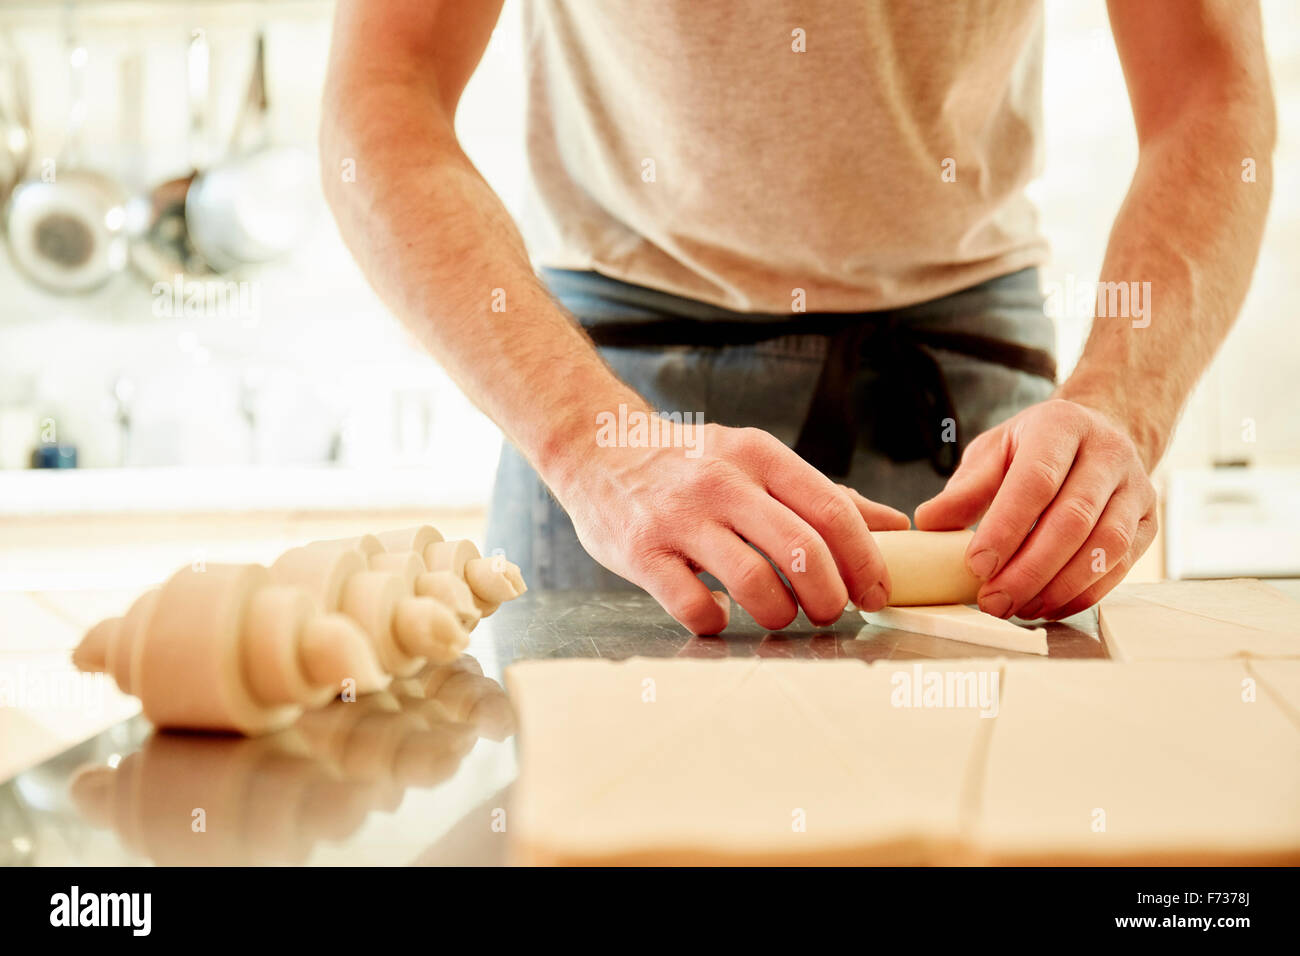 Un baker lavorando su una superficie infarinata fino al rotolamento di quadratini di pasta in croissant forme prima della cottura. Foto Stock